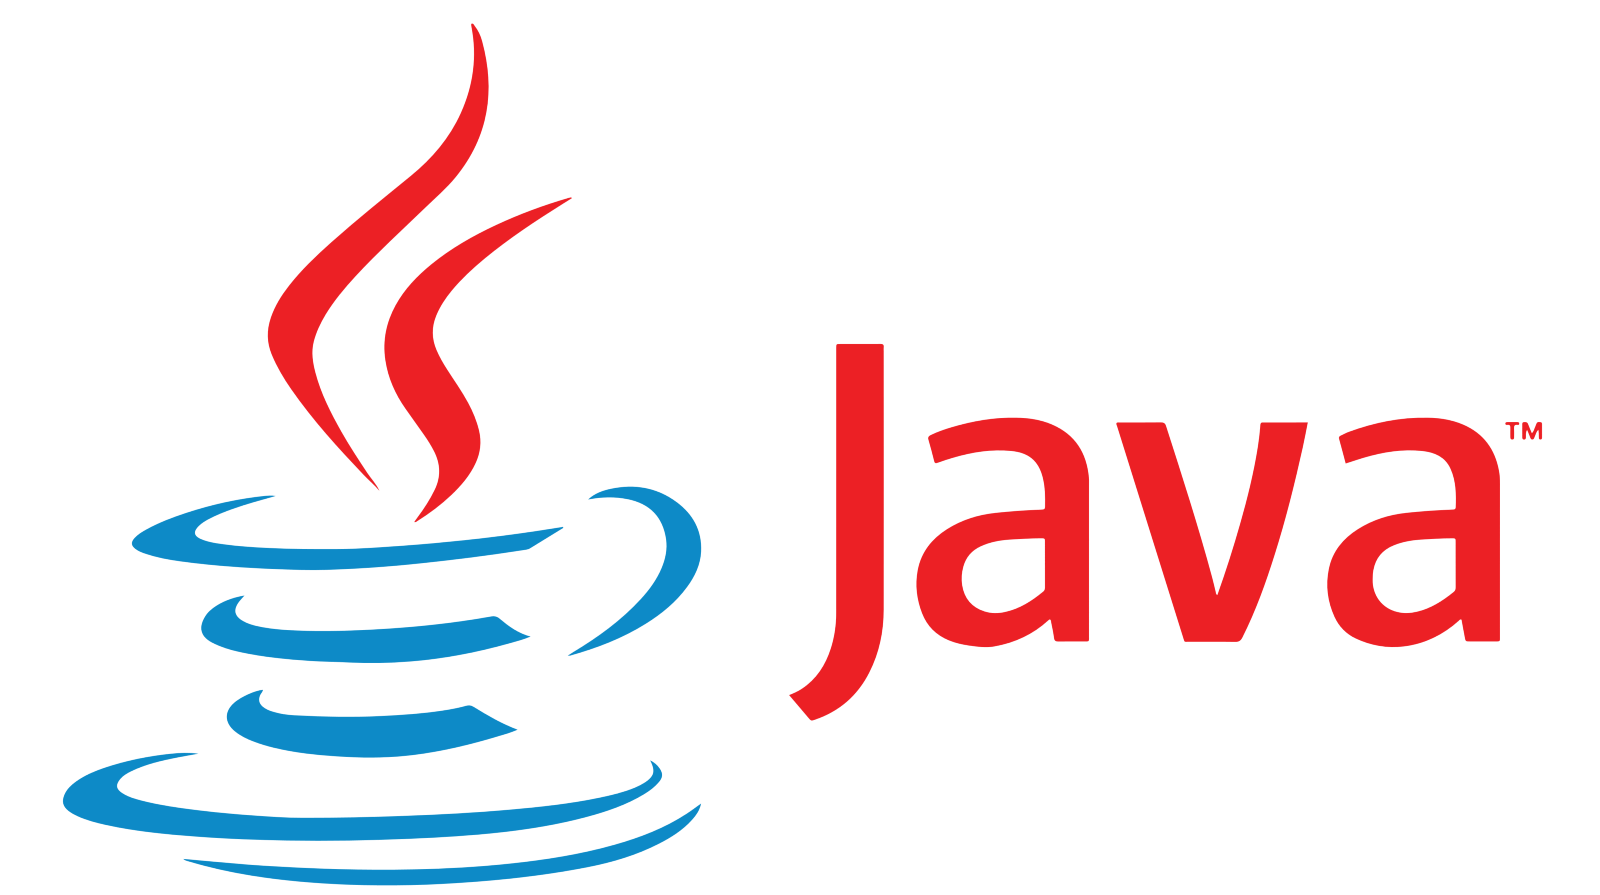 ทำความรู้จักกับความเข้าใจเกี่ยวกับ Java และฟังก์ชั่นจุดแข็งและจุดอ่อนของ Java